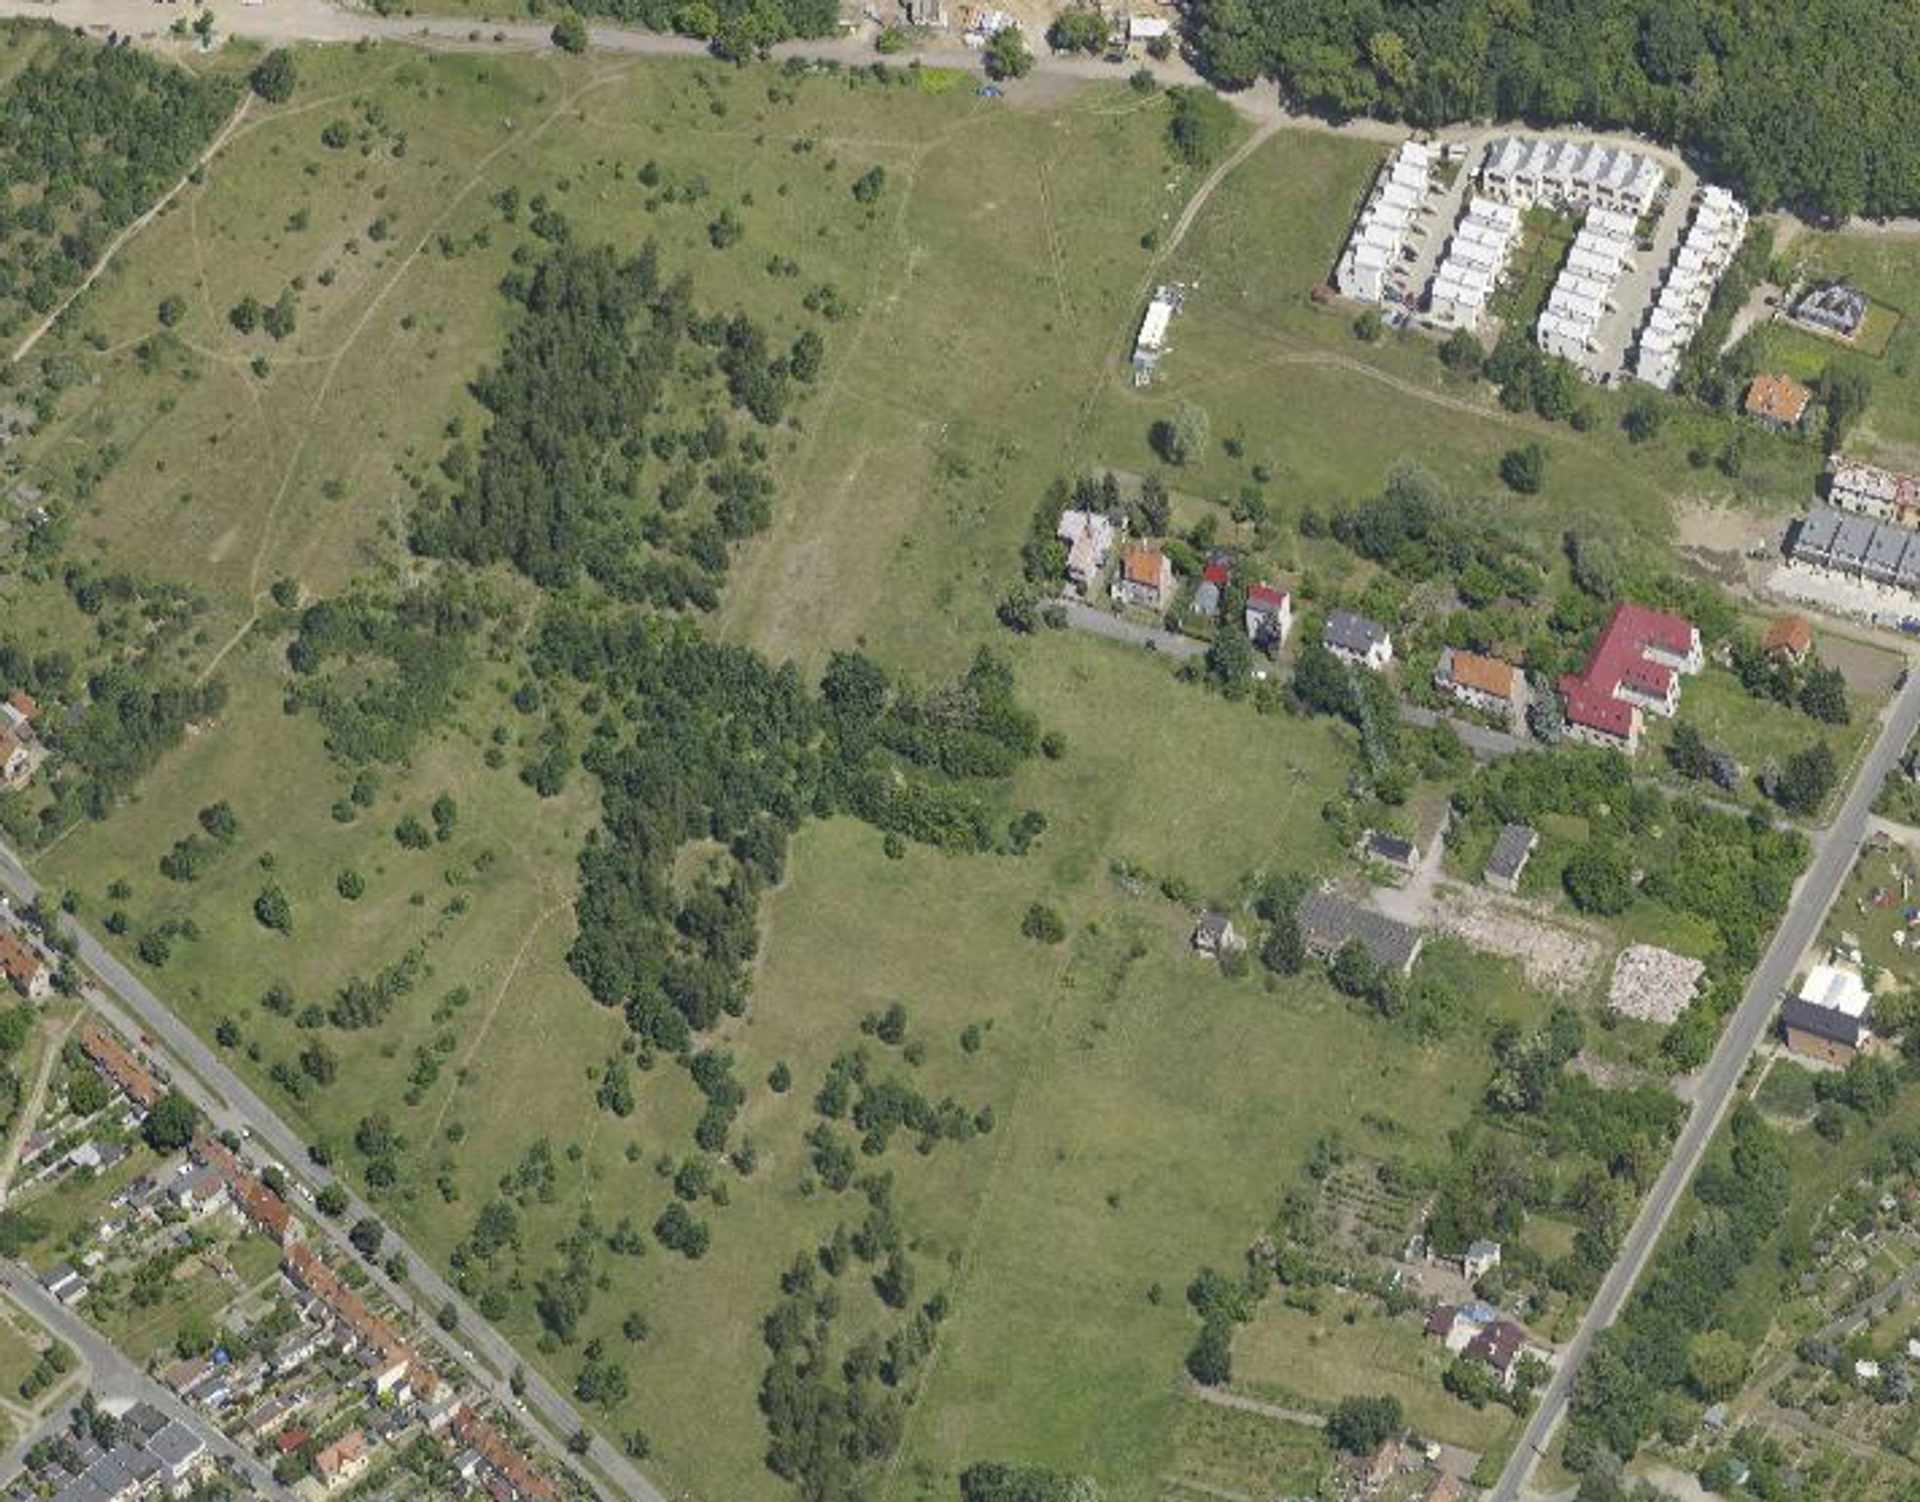  Będzie kolejna nowa inwestycja mieszkaniowa na wrocławskich Maślicach